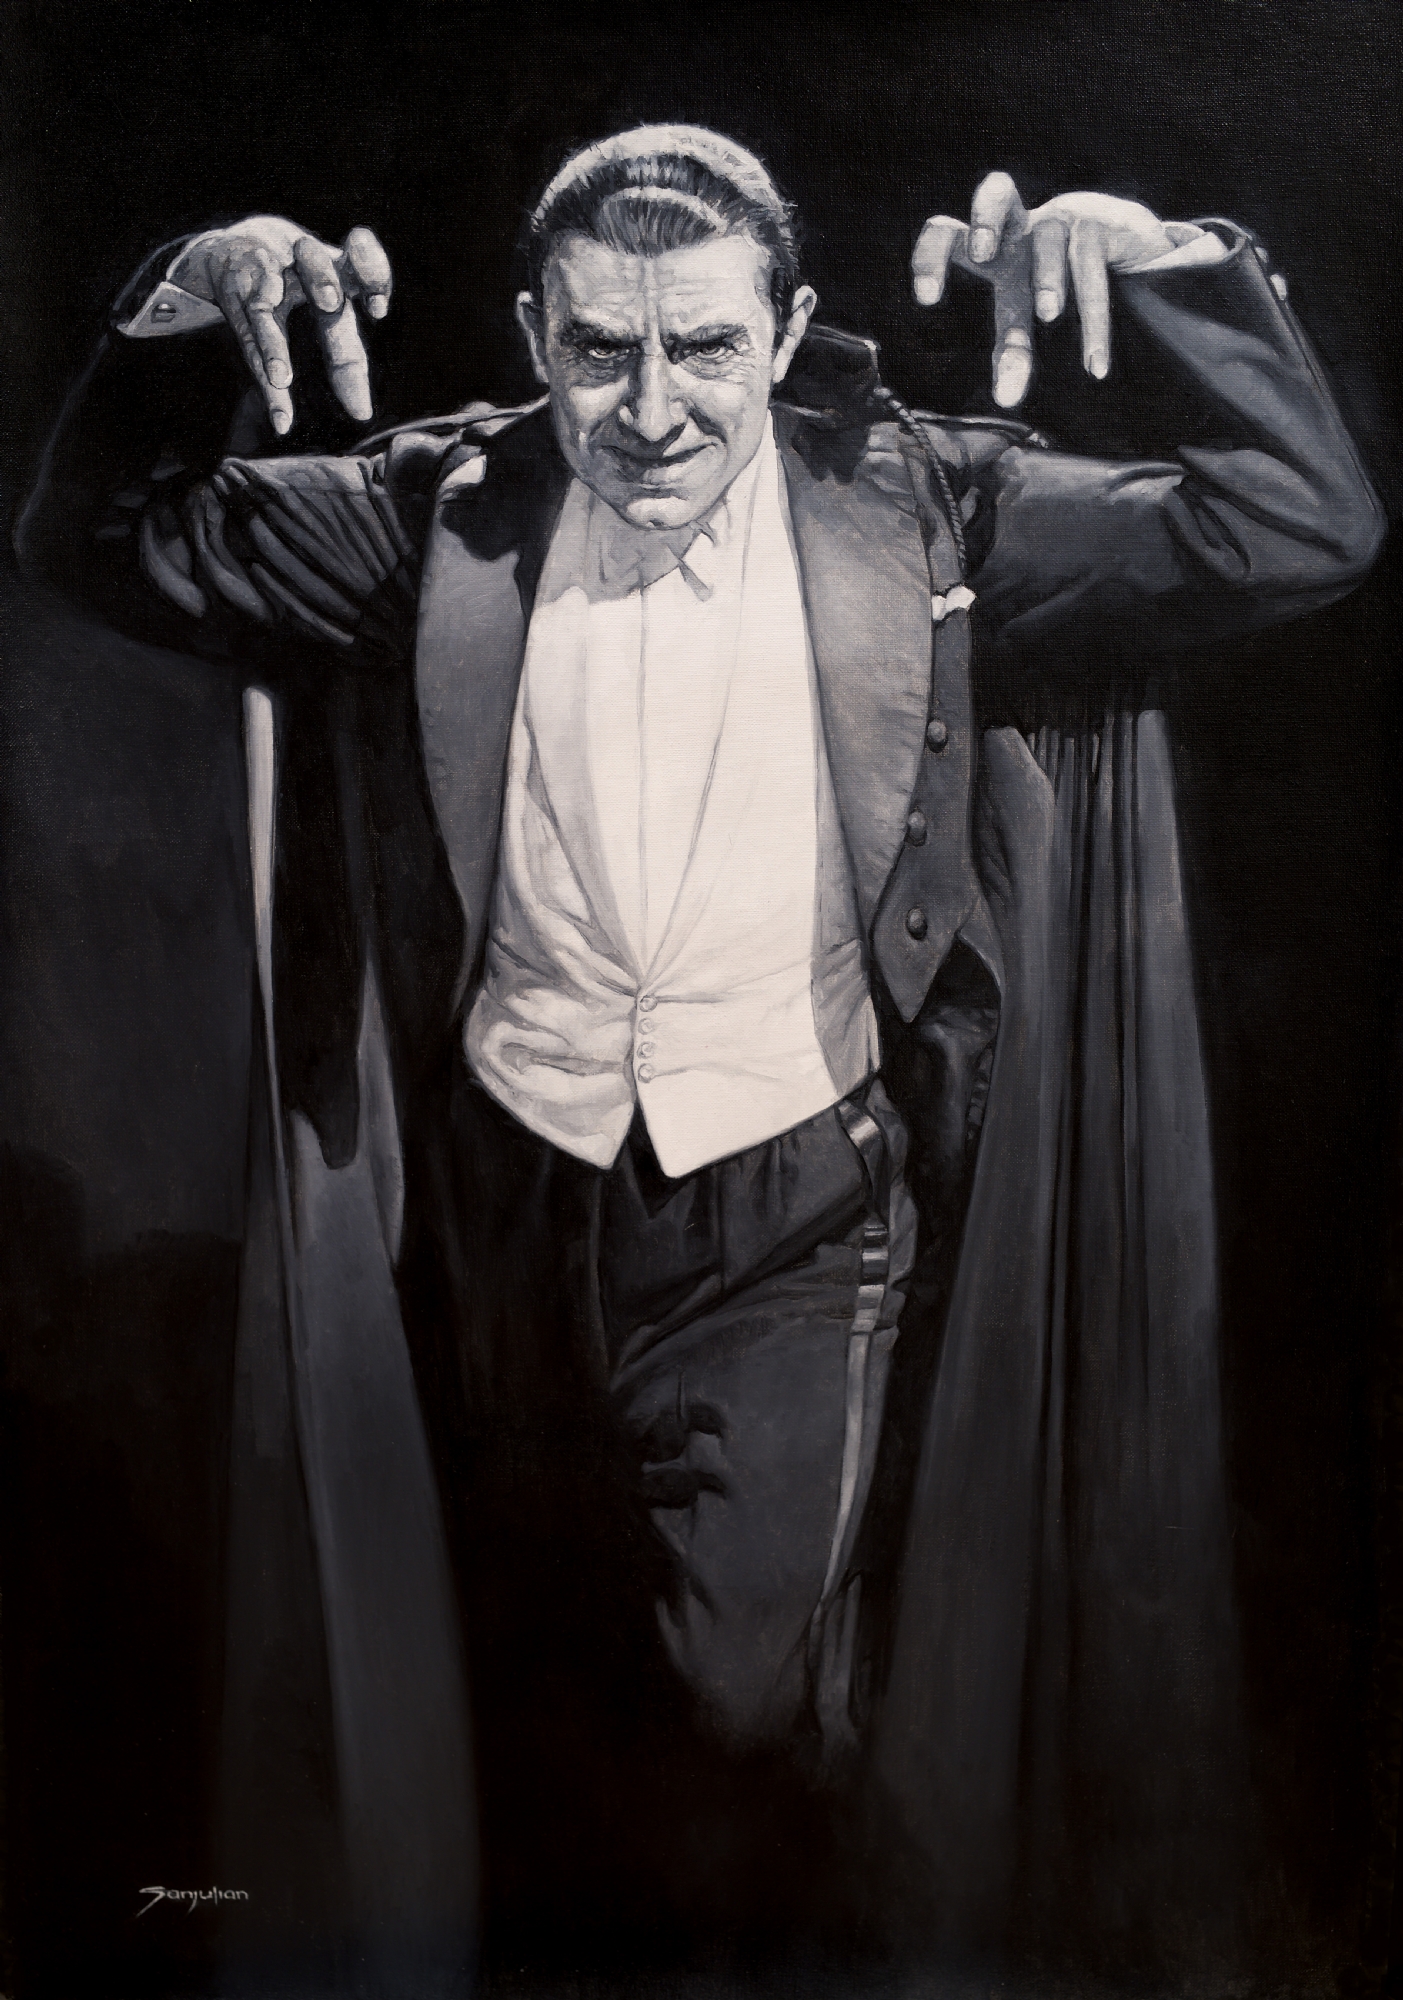 Bela Lugosi Dracula Painting By Sanjulian In Charles Dahan S Original Art Comic Art Gallery Room